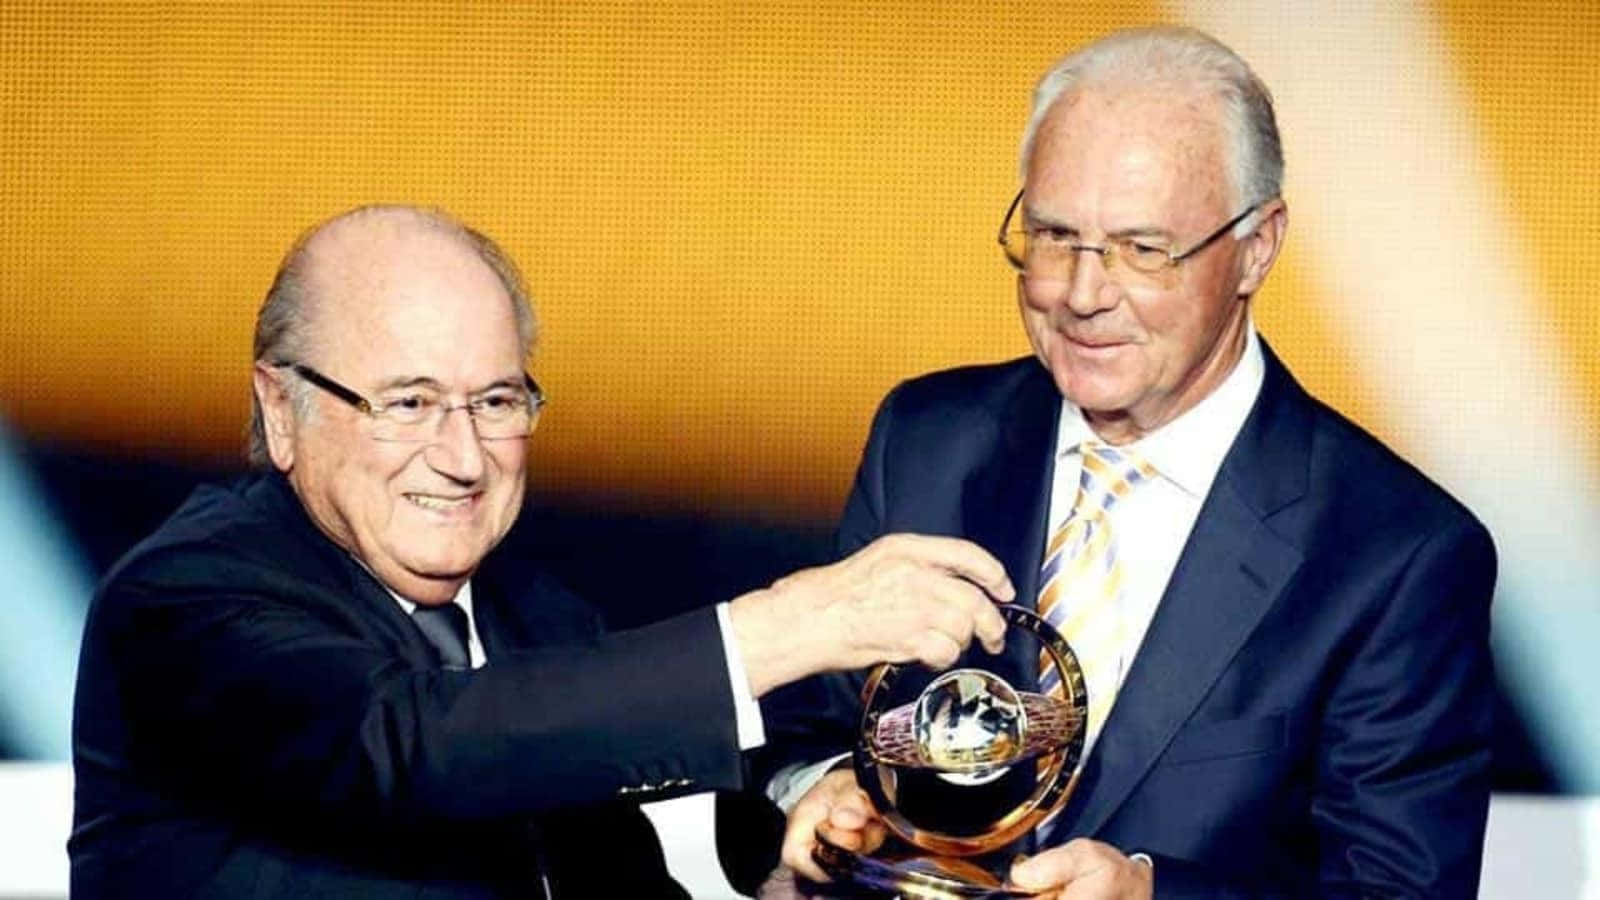 Figuraleggendaria Del Calcio Franz Beckenbauer A Una Cerimonia Di Premiazione. Sfondo